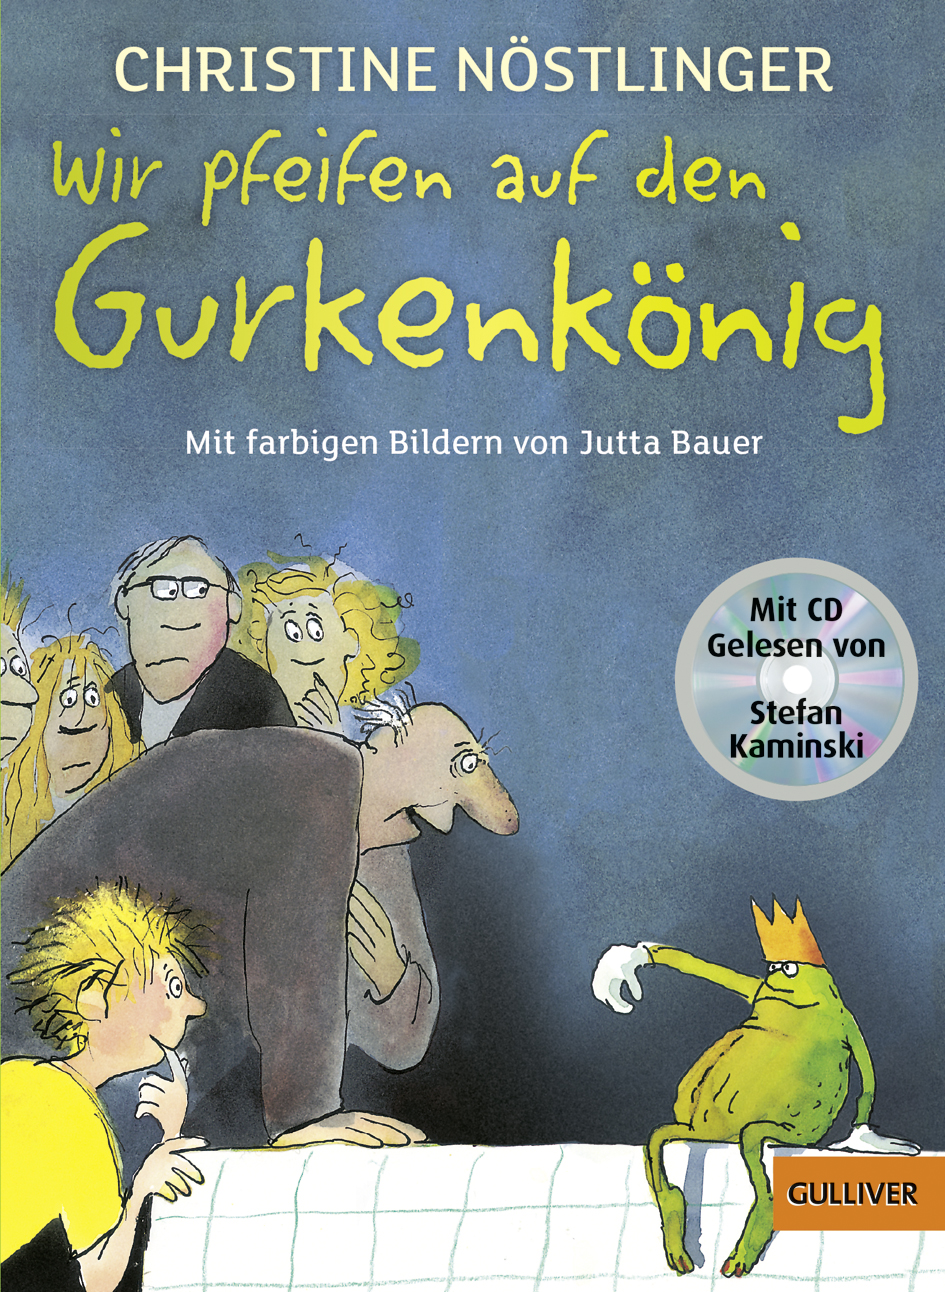 Gurkenkönig mit CD_Gulliver.